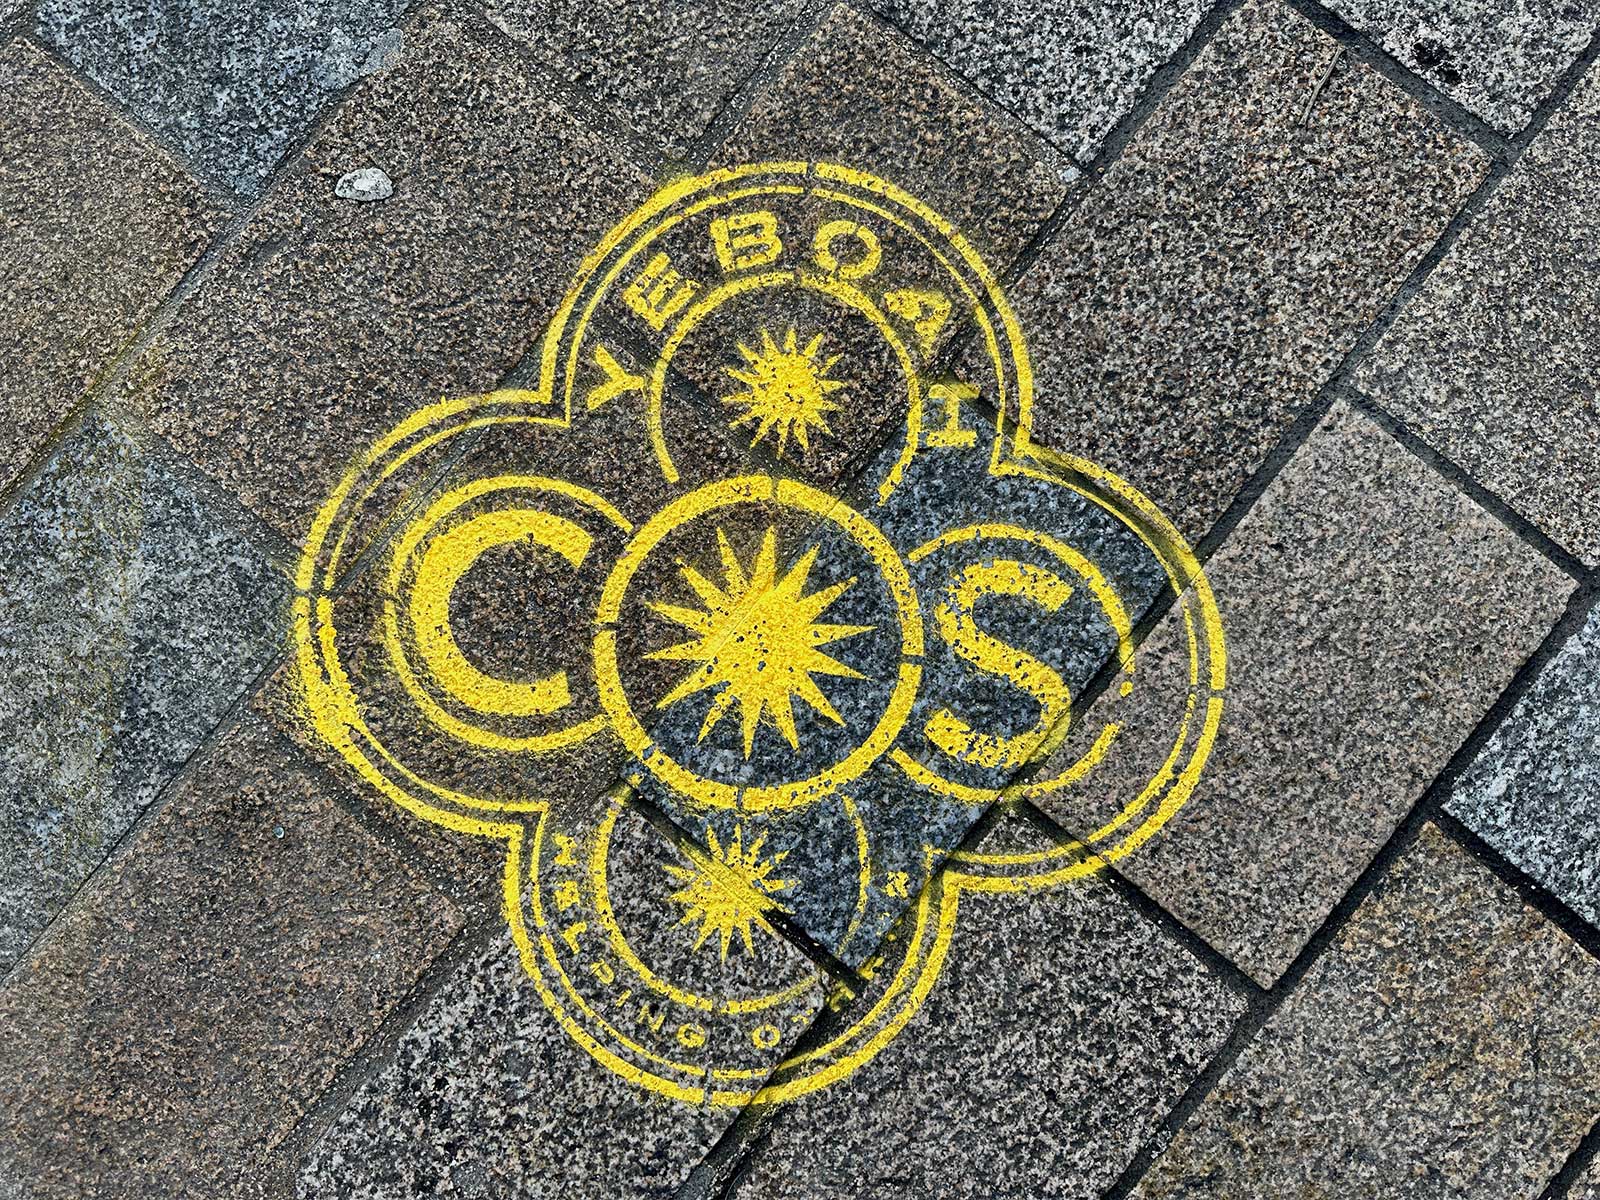 COS - stencils - London